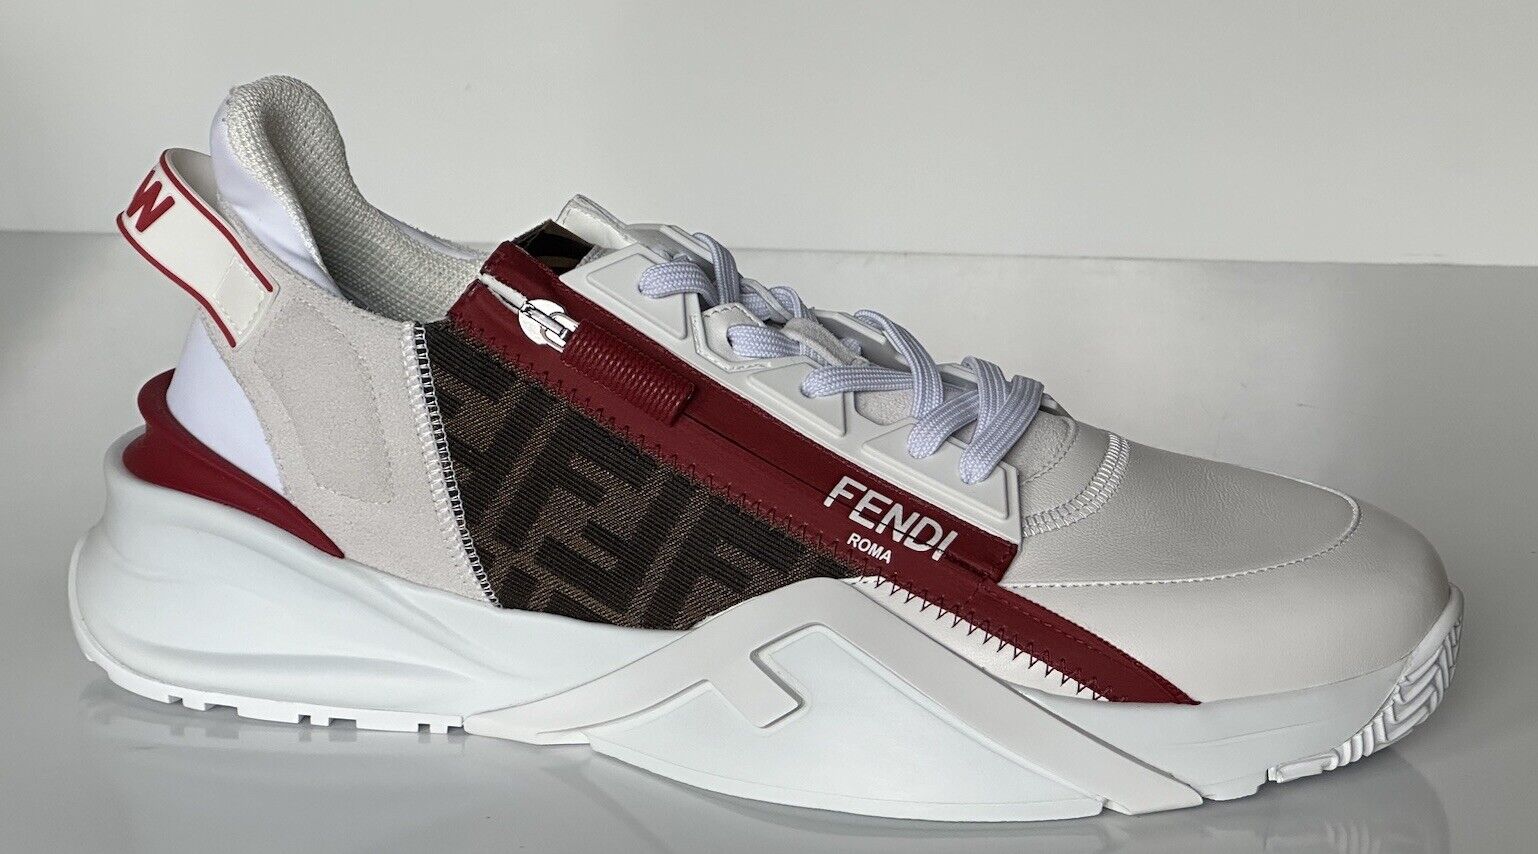 NIB $995 Fendi Flow Men's Leather Sneakers White 13 US (46 Euro) 7E1392 Italy